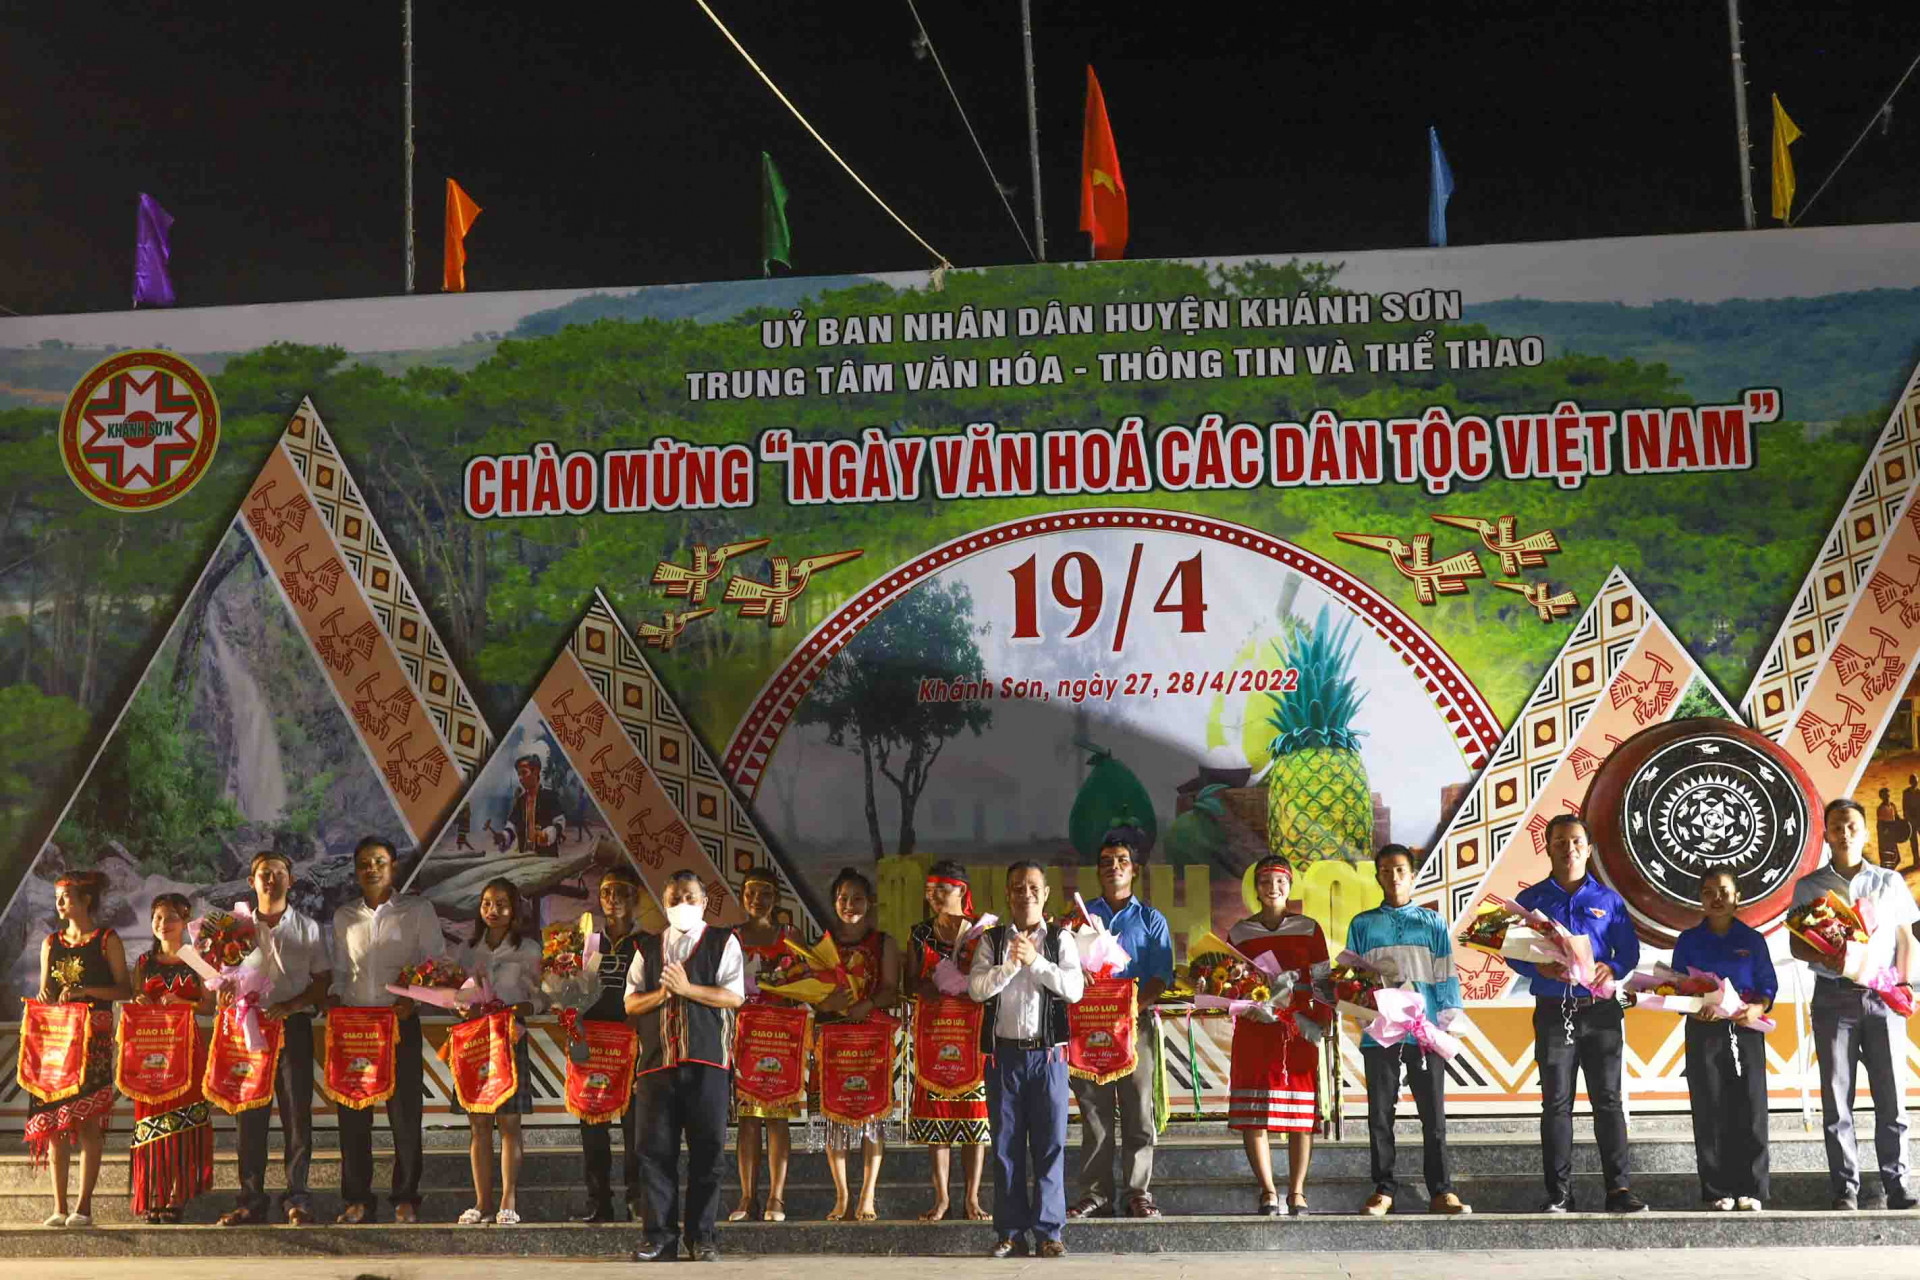 Lãnh đạo huyện Khánh Sơn tặng cờ lưu niệm và hoa cho đại diện các đoàn về tham gia Ngày văn hóa các dân tộc Việt Nam.